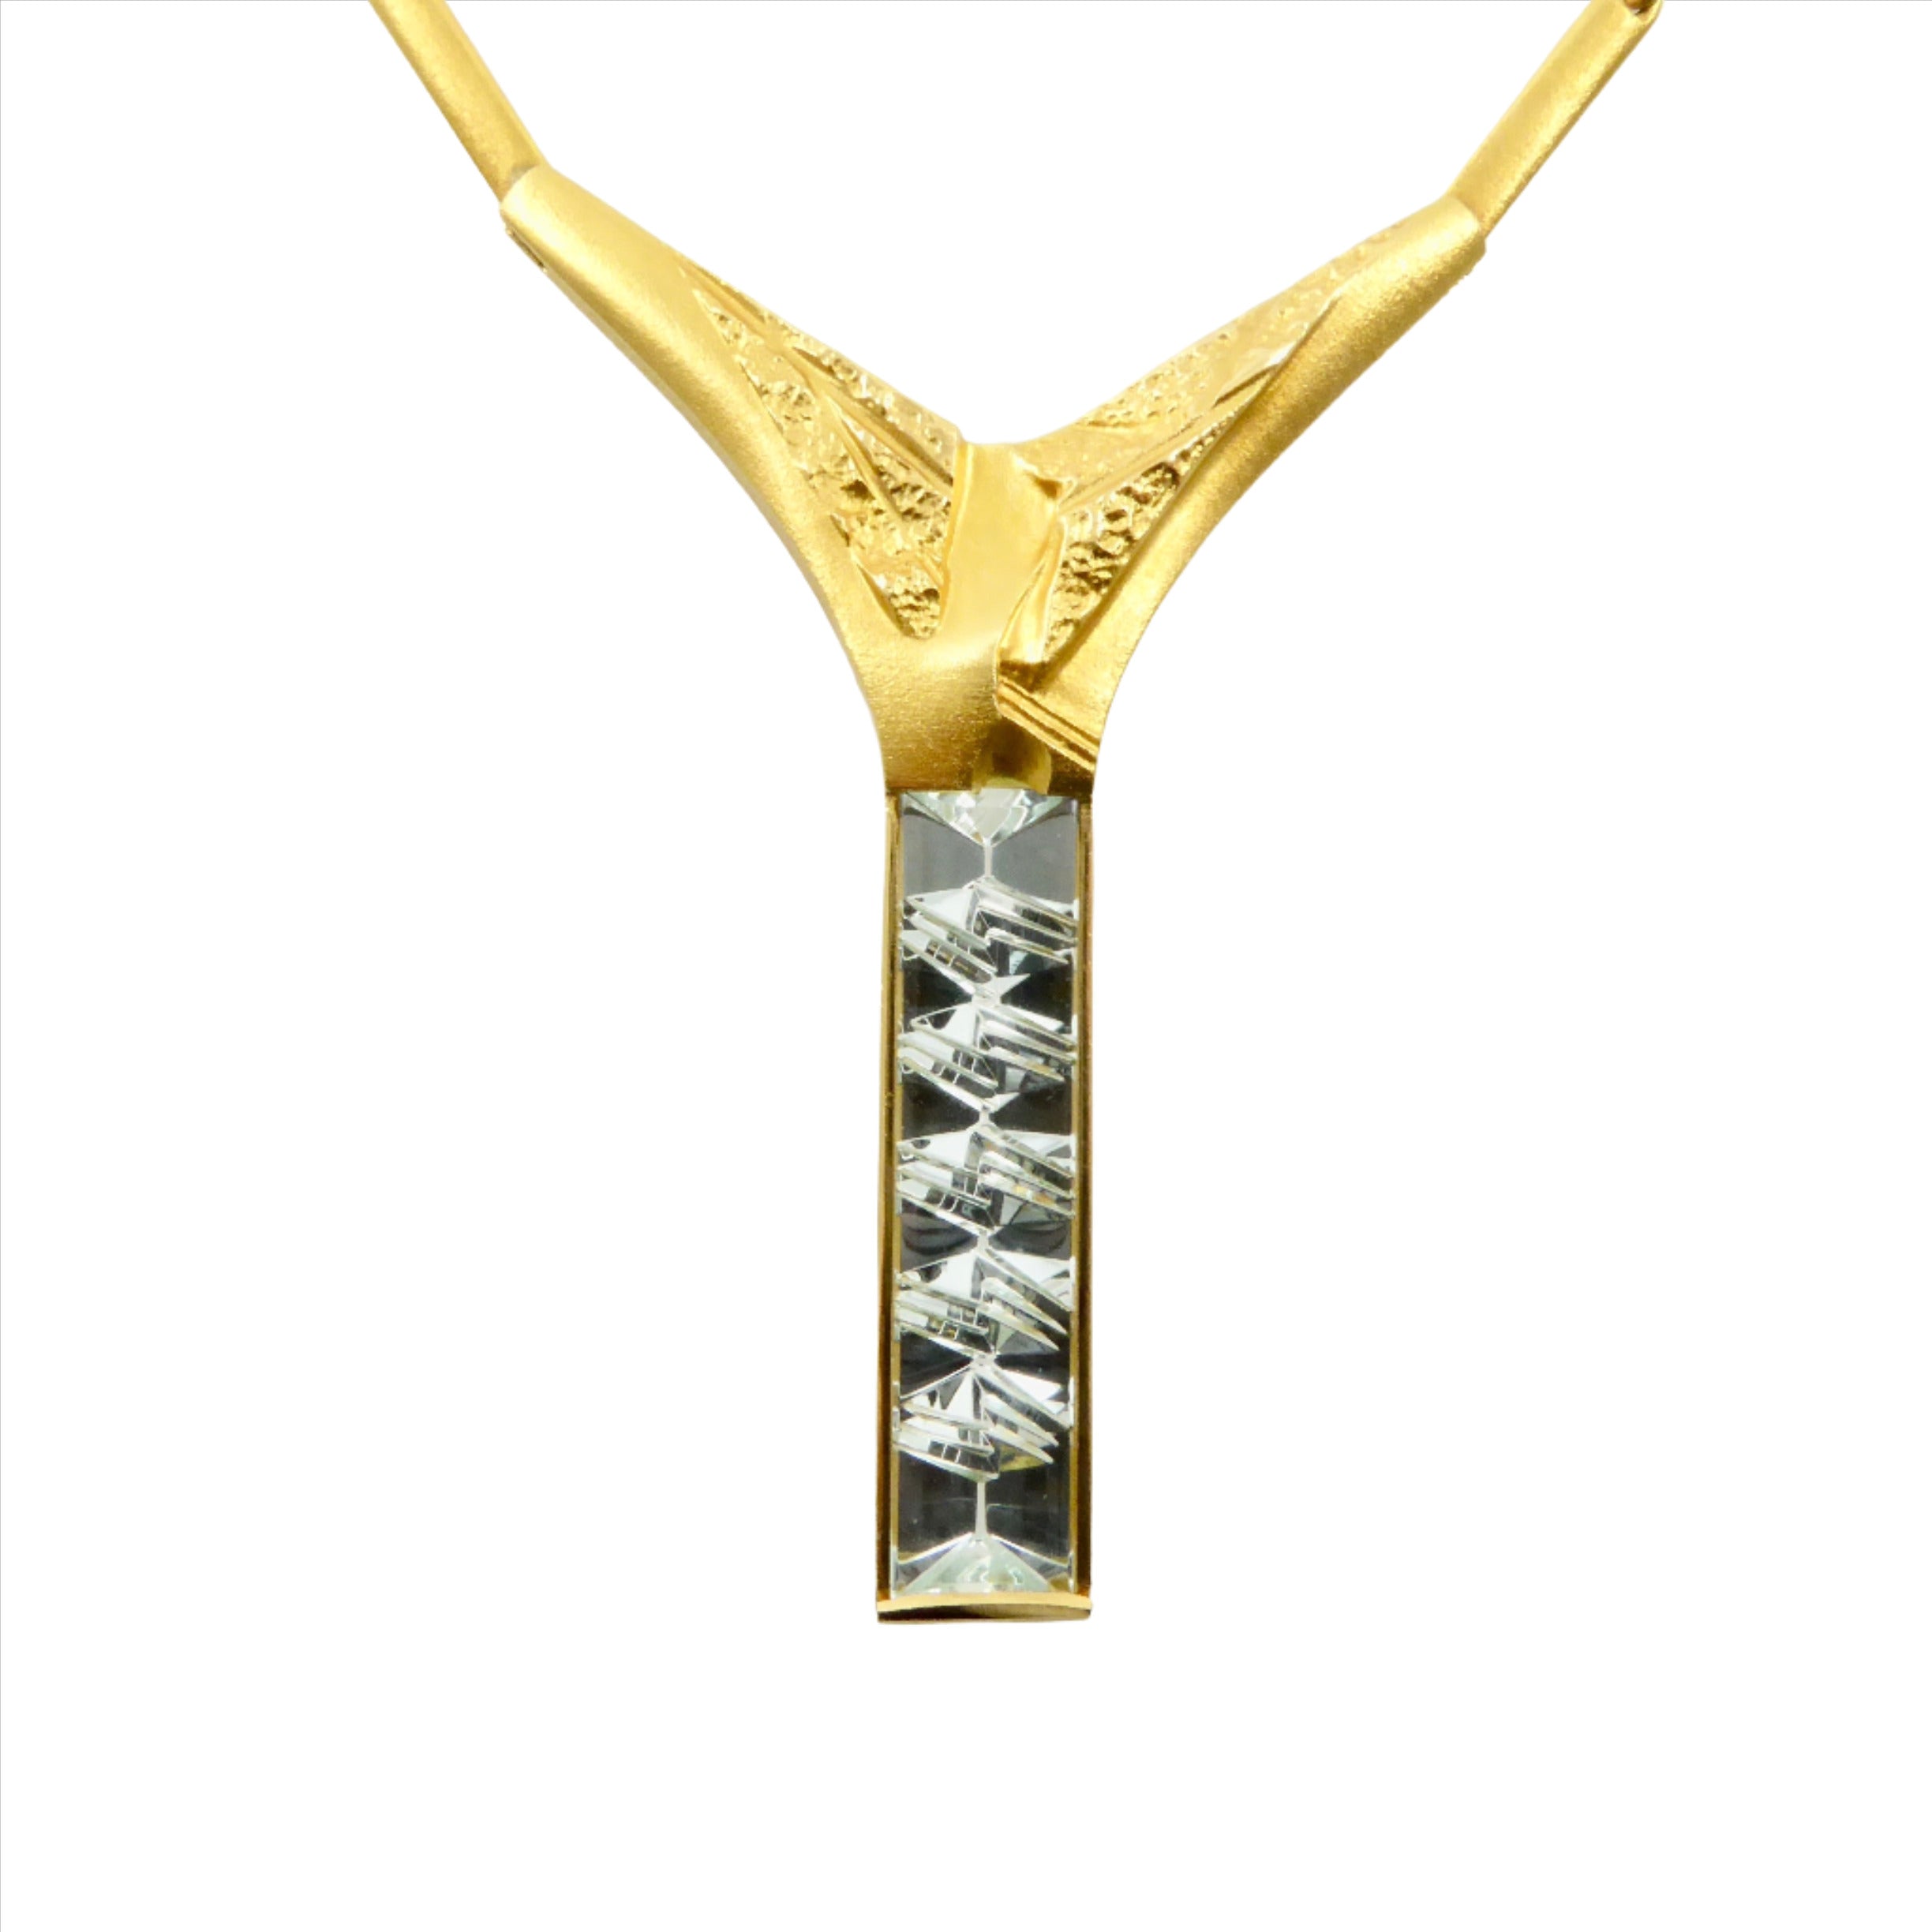 Lapponia Munsteiner gold aquamarine necklace